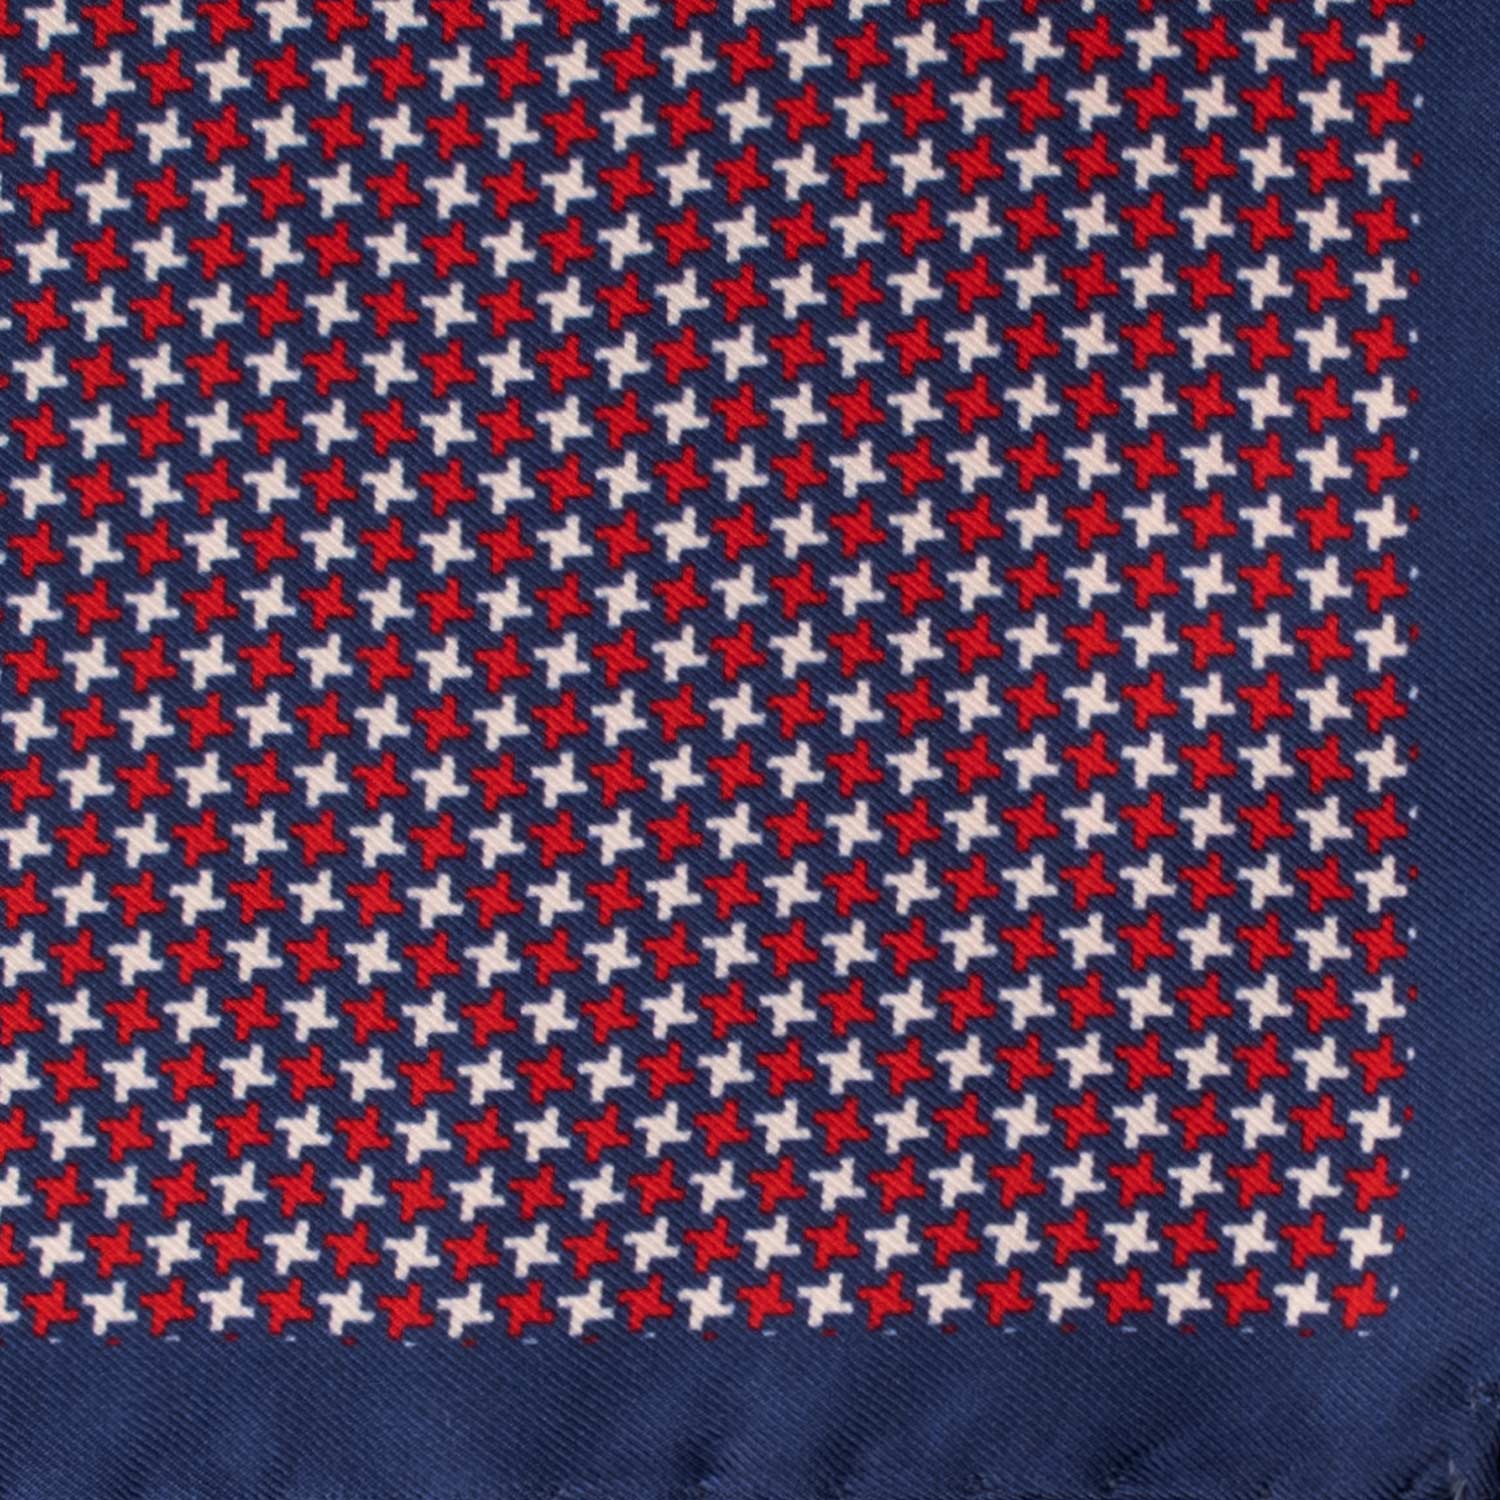 Fazzoletto da Taschino Vintage di Seta Blu Navy Pied de Poule Rosso Bianco POCV790 Dettaglio